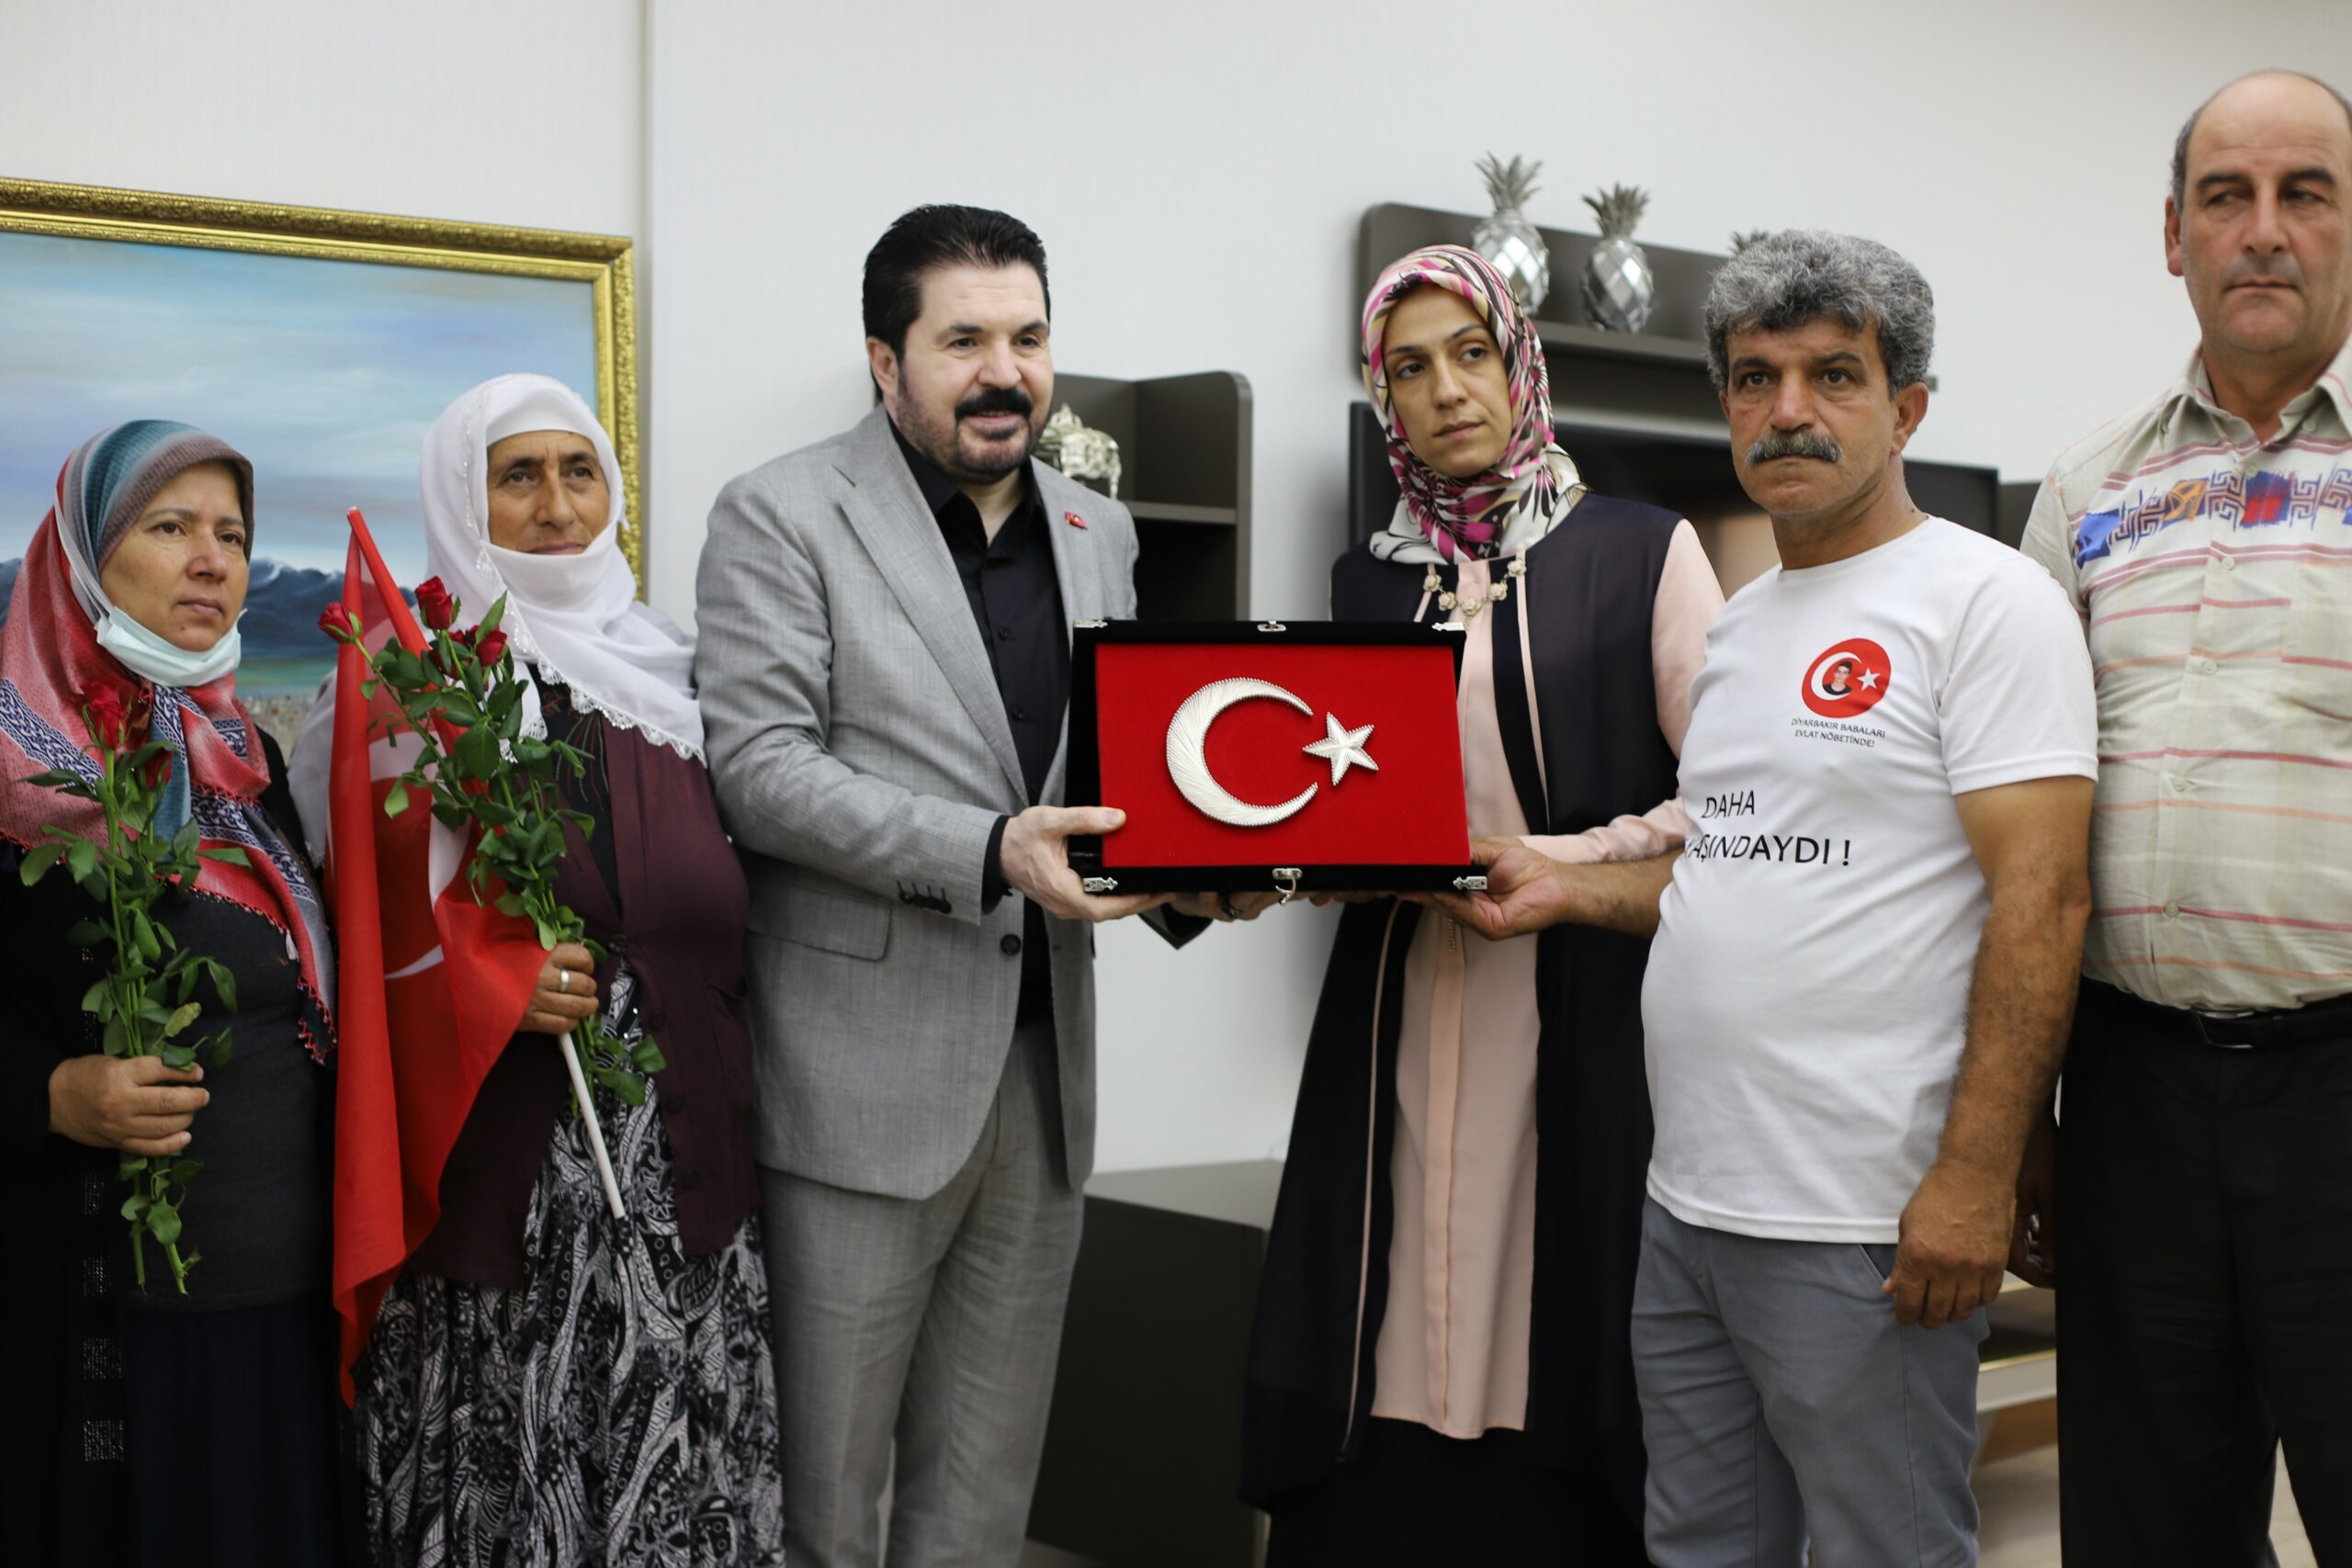 Evlat nöbetindeki aileler Diyarbakır yürüyüşü öncesi Başkan Sayan’la bir araya geldi